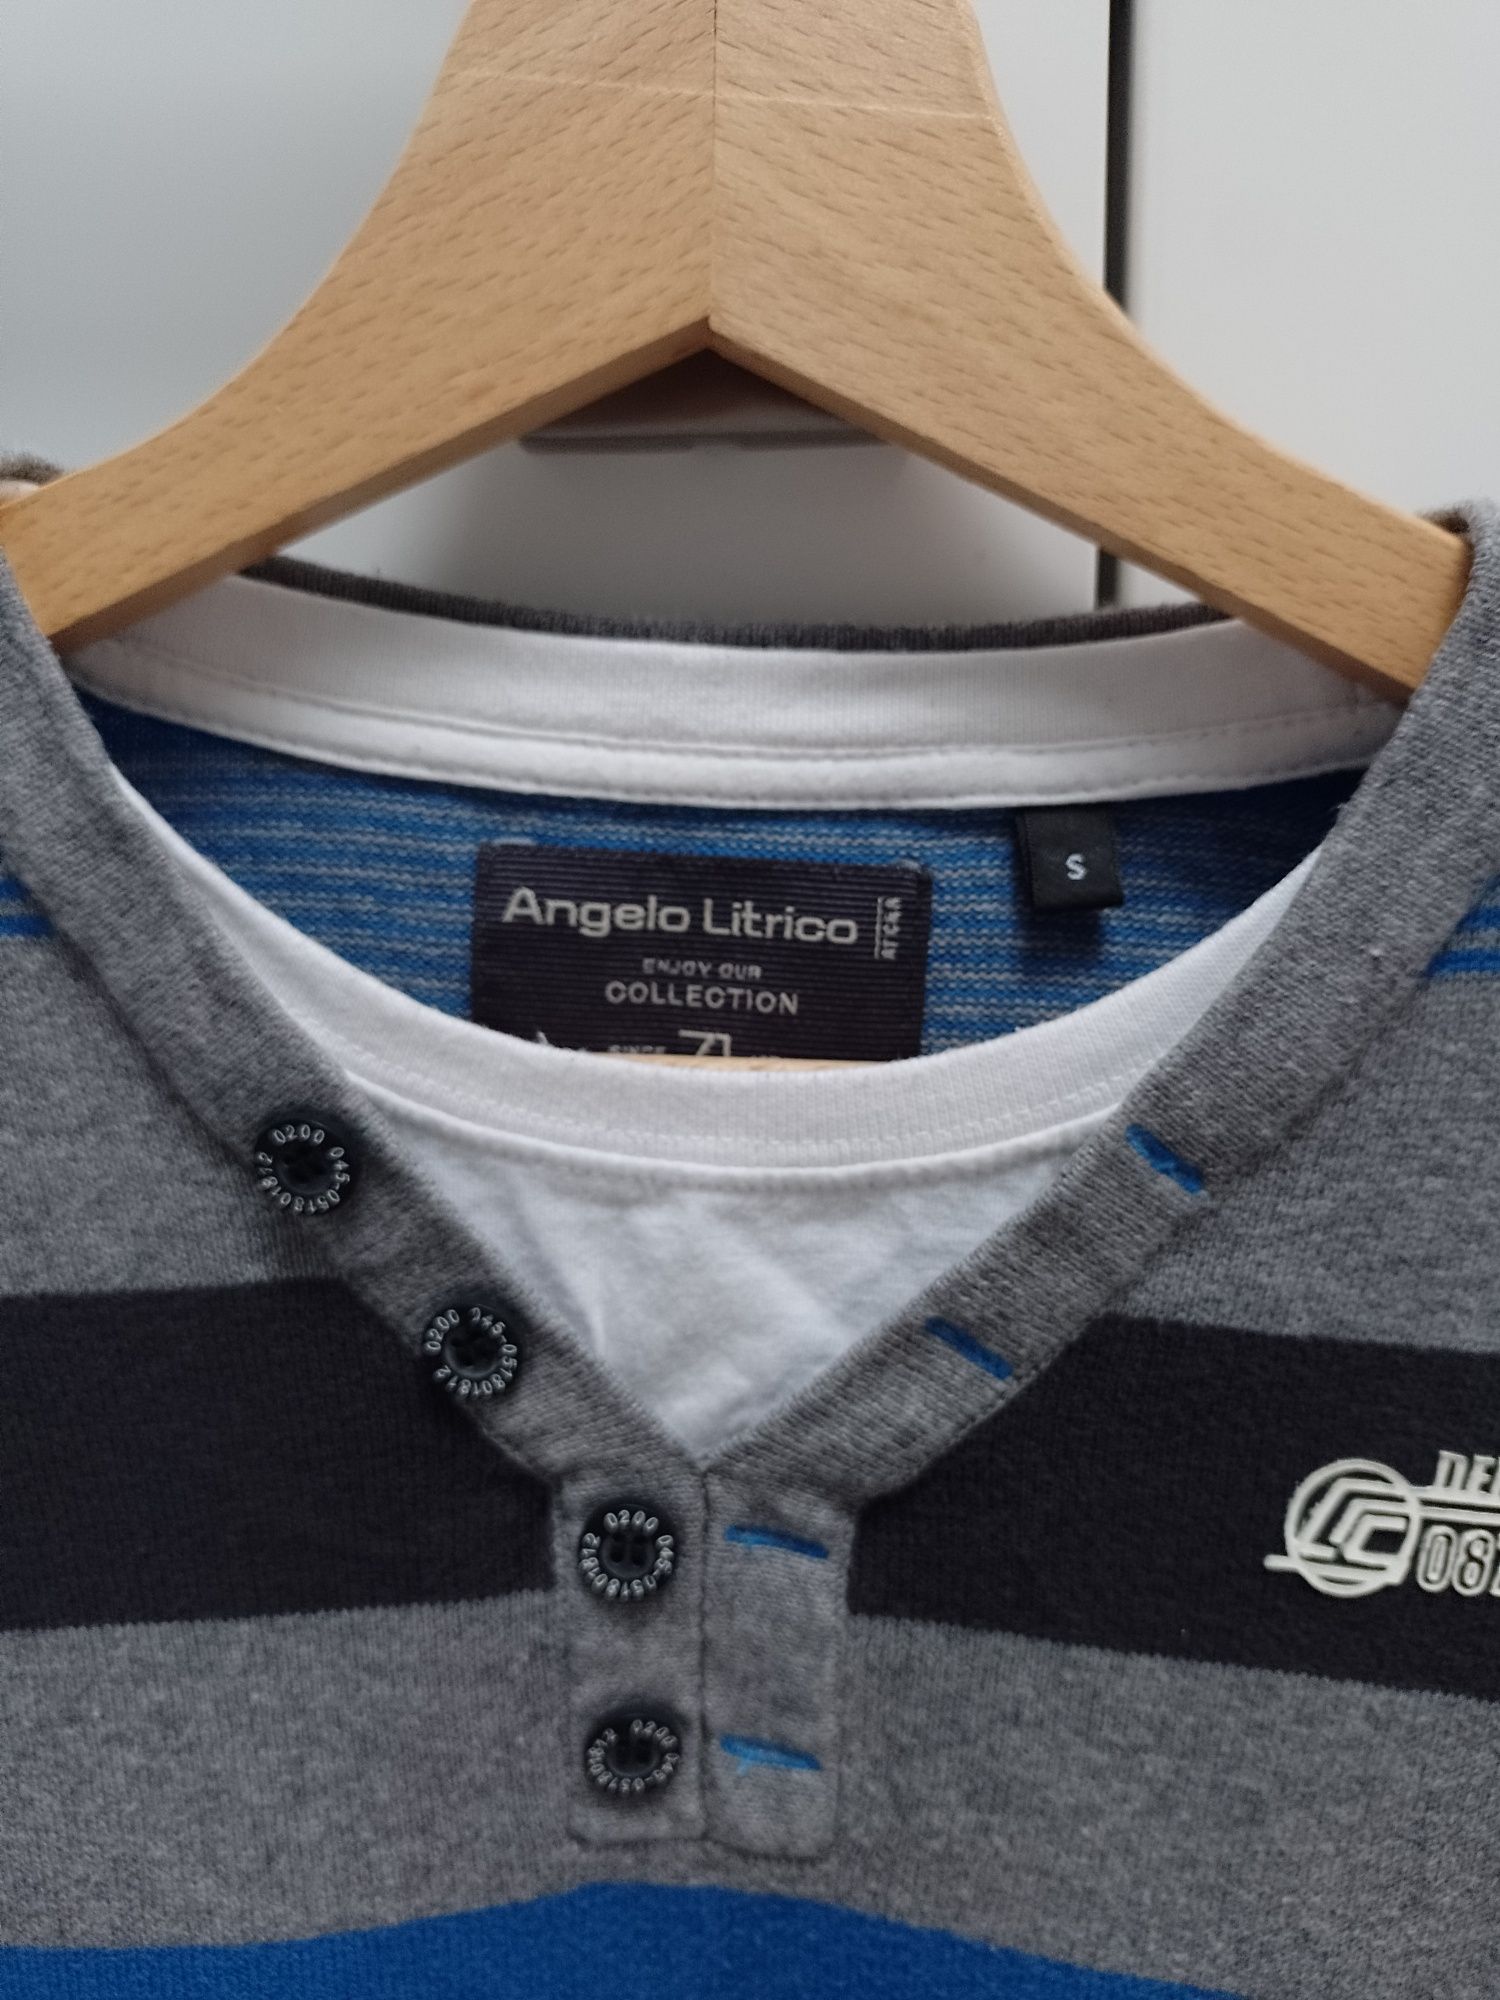 Angelo litrico sweterek dla chłopca roz s